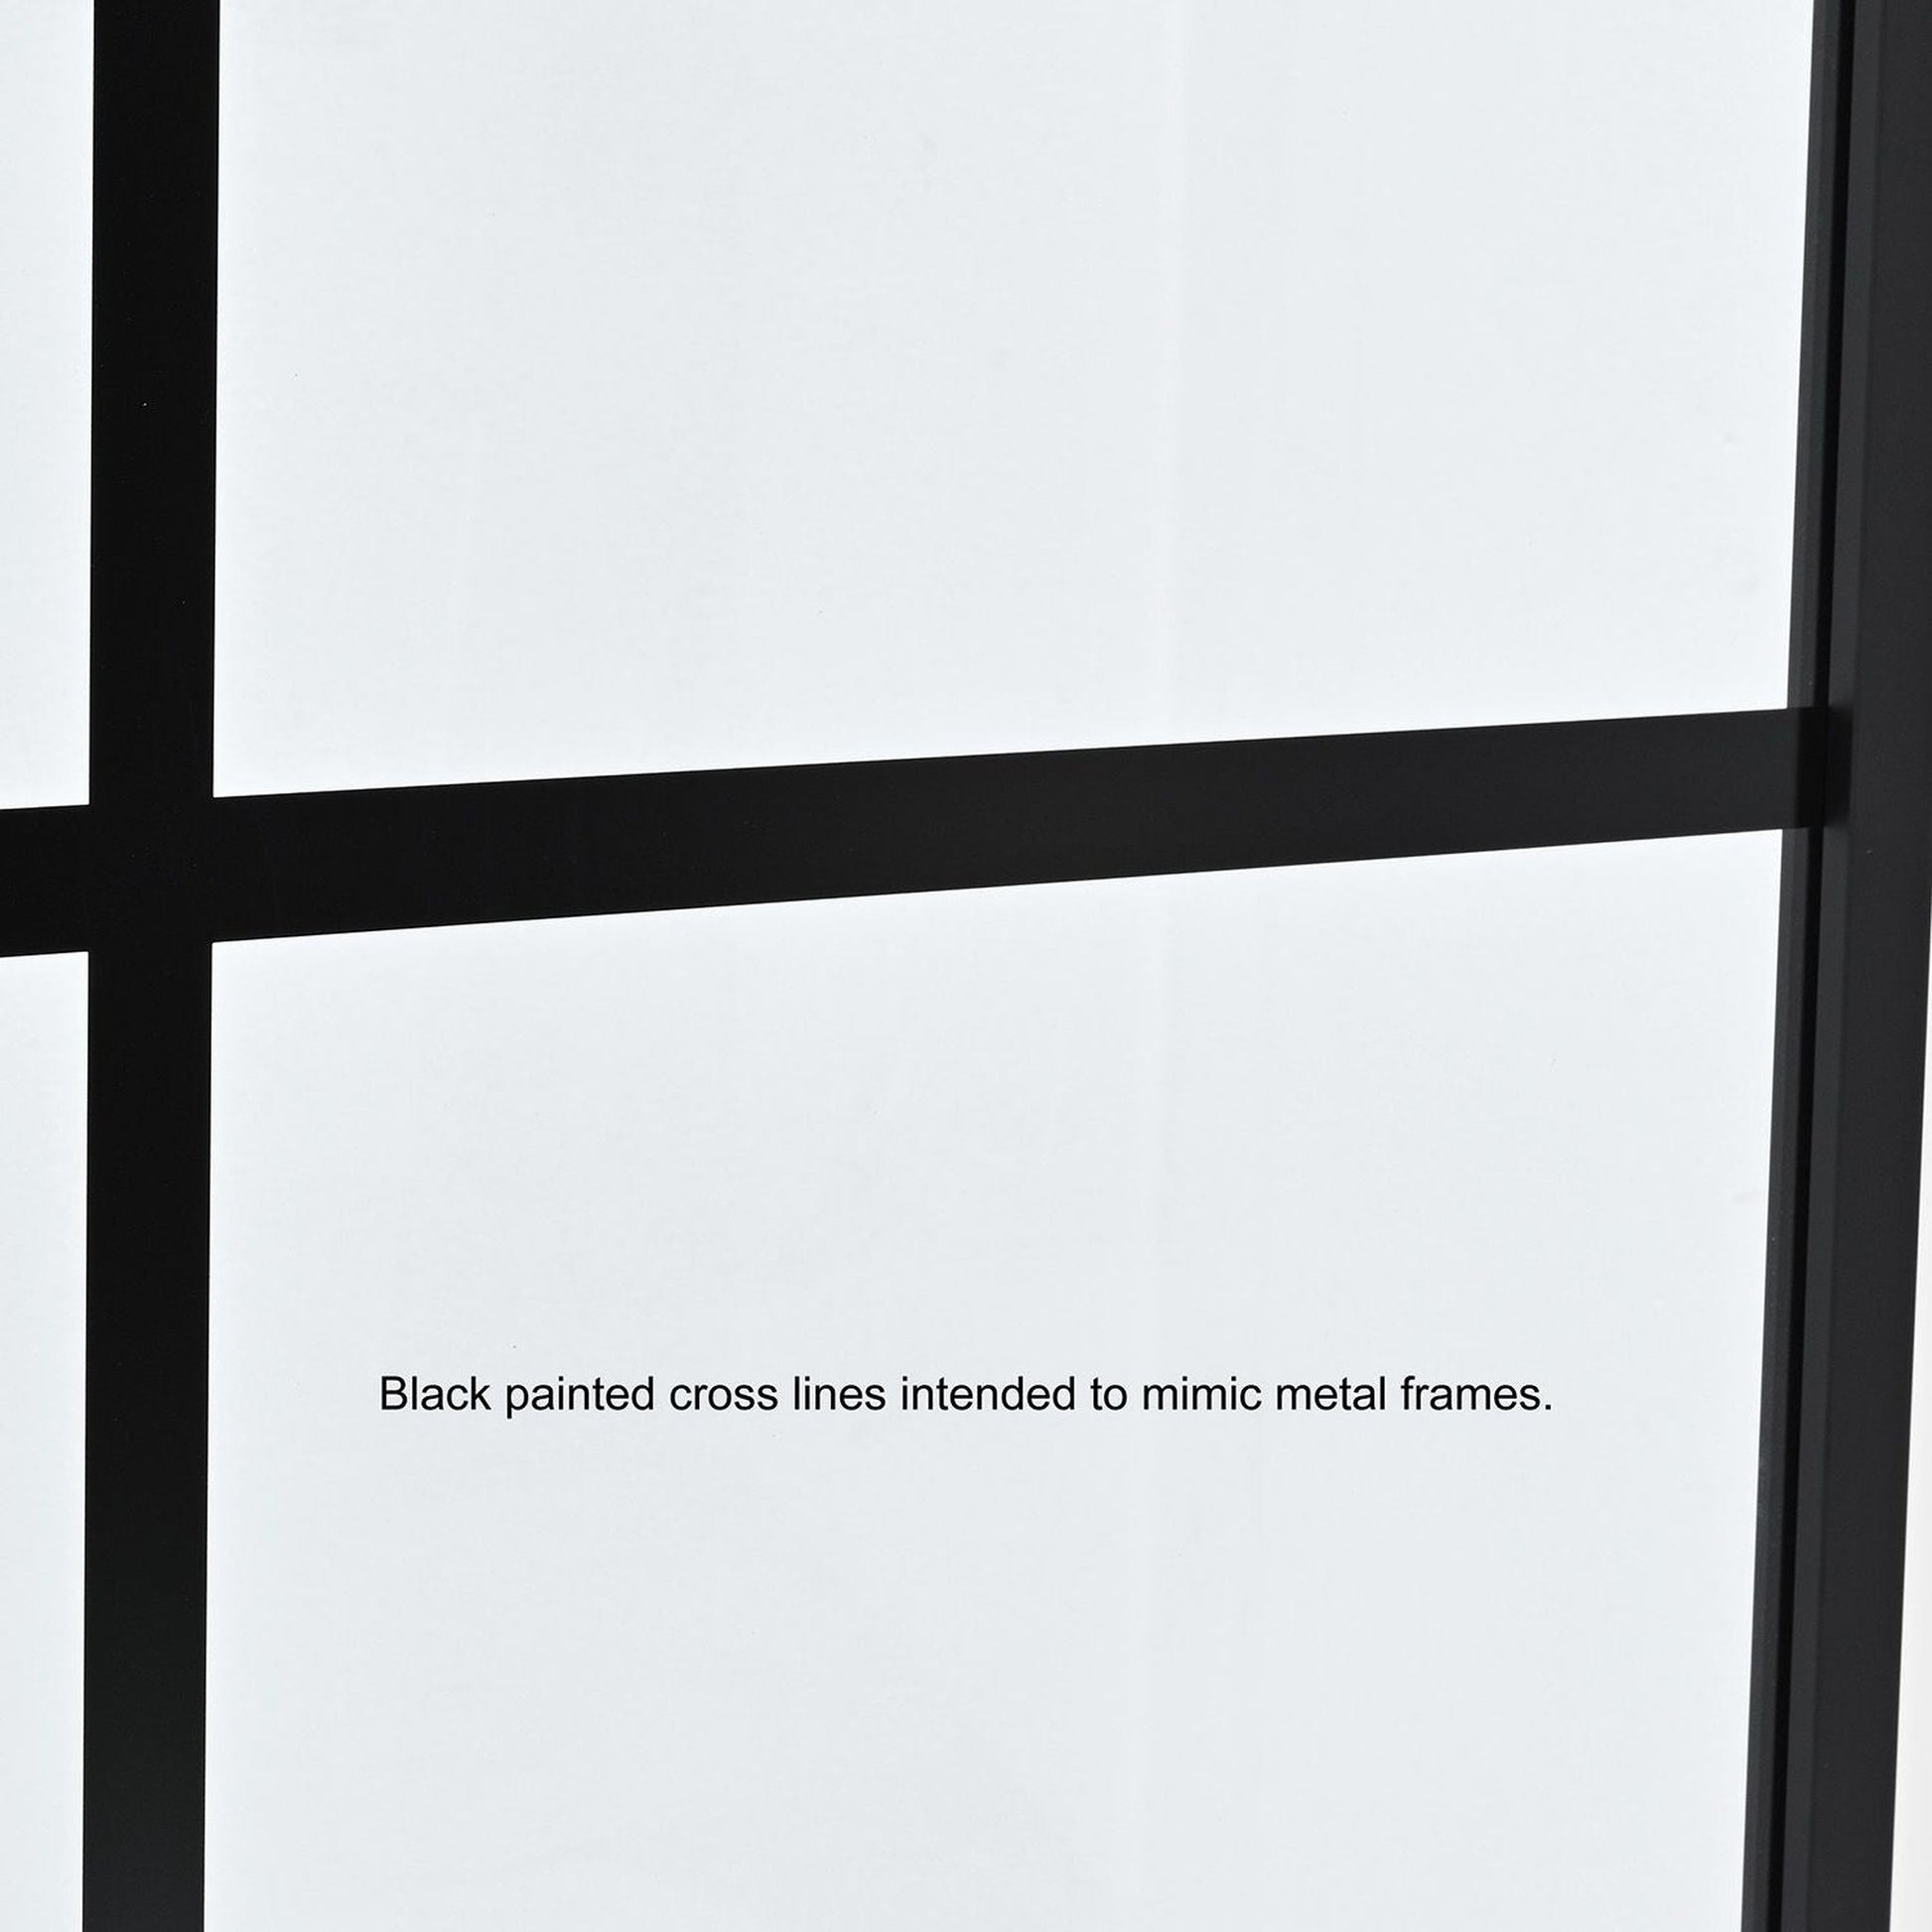 Vinnova Azpeitia 34" x 74" Framed Fixed Glass Panel in Matte Black Finish